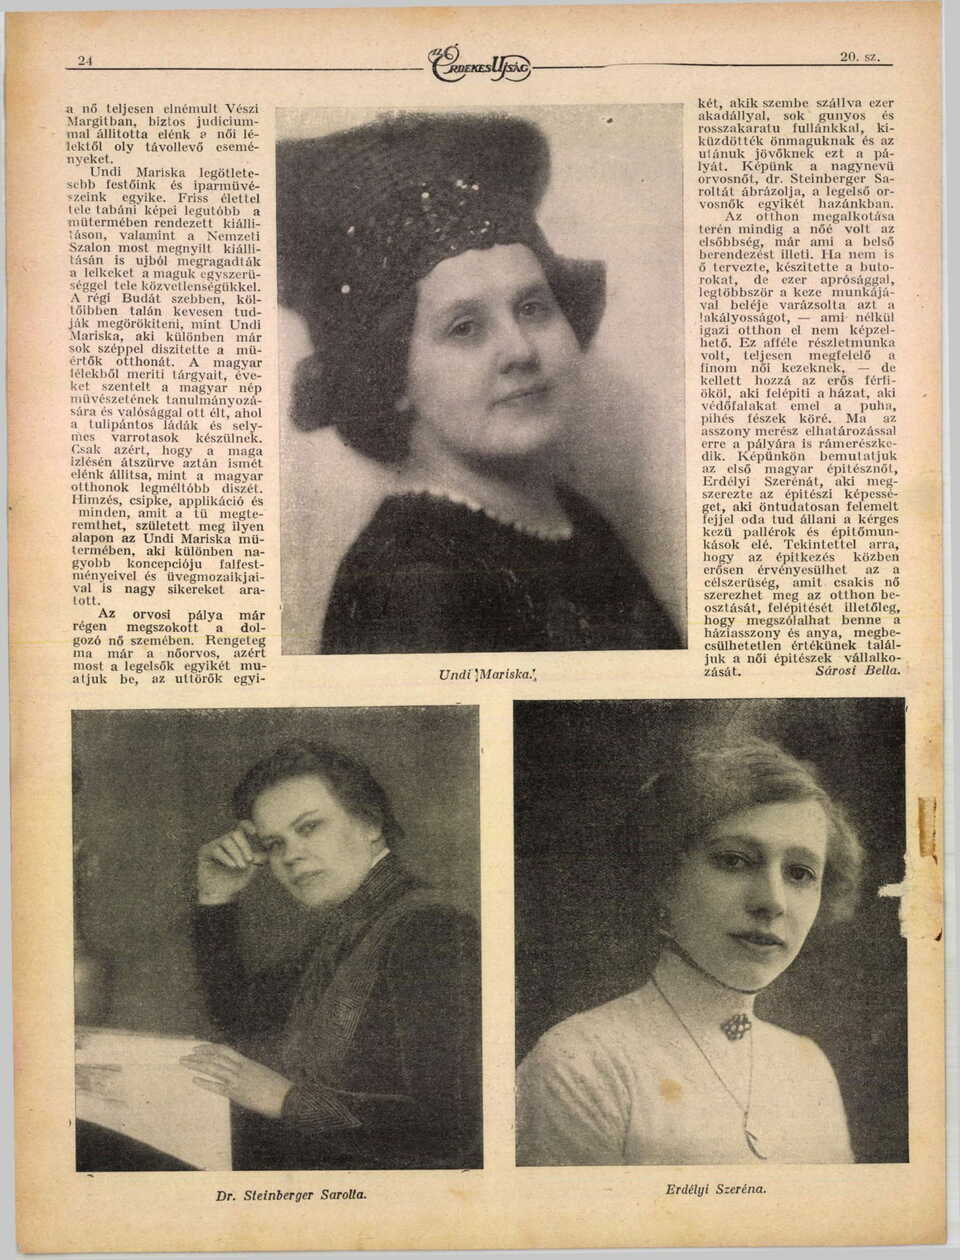 Jobbra lent Erdélyi Szeréna, akit a cikk szövege „az első magyar építésznőként” említ. Az Érdekes Újság, 1918/20. Forrás: ADT Arcanum